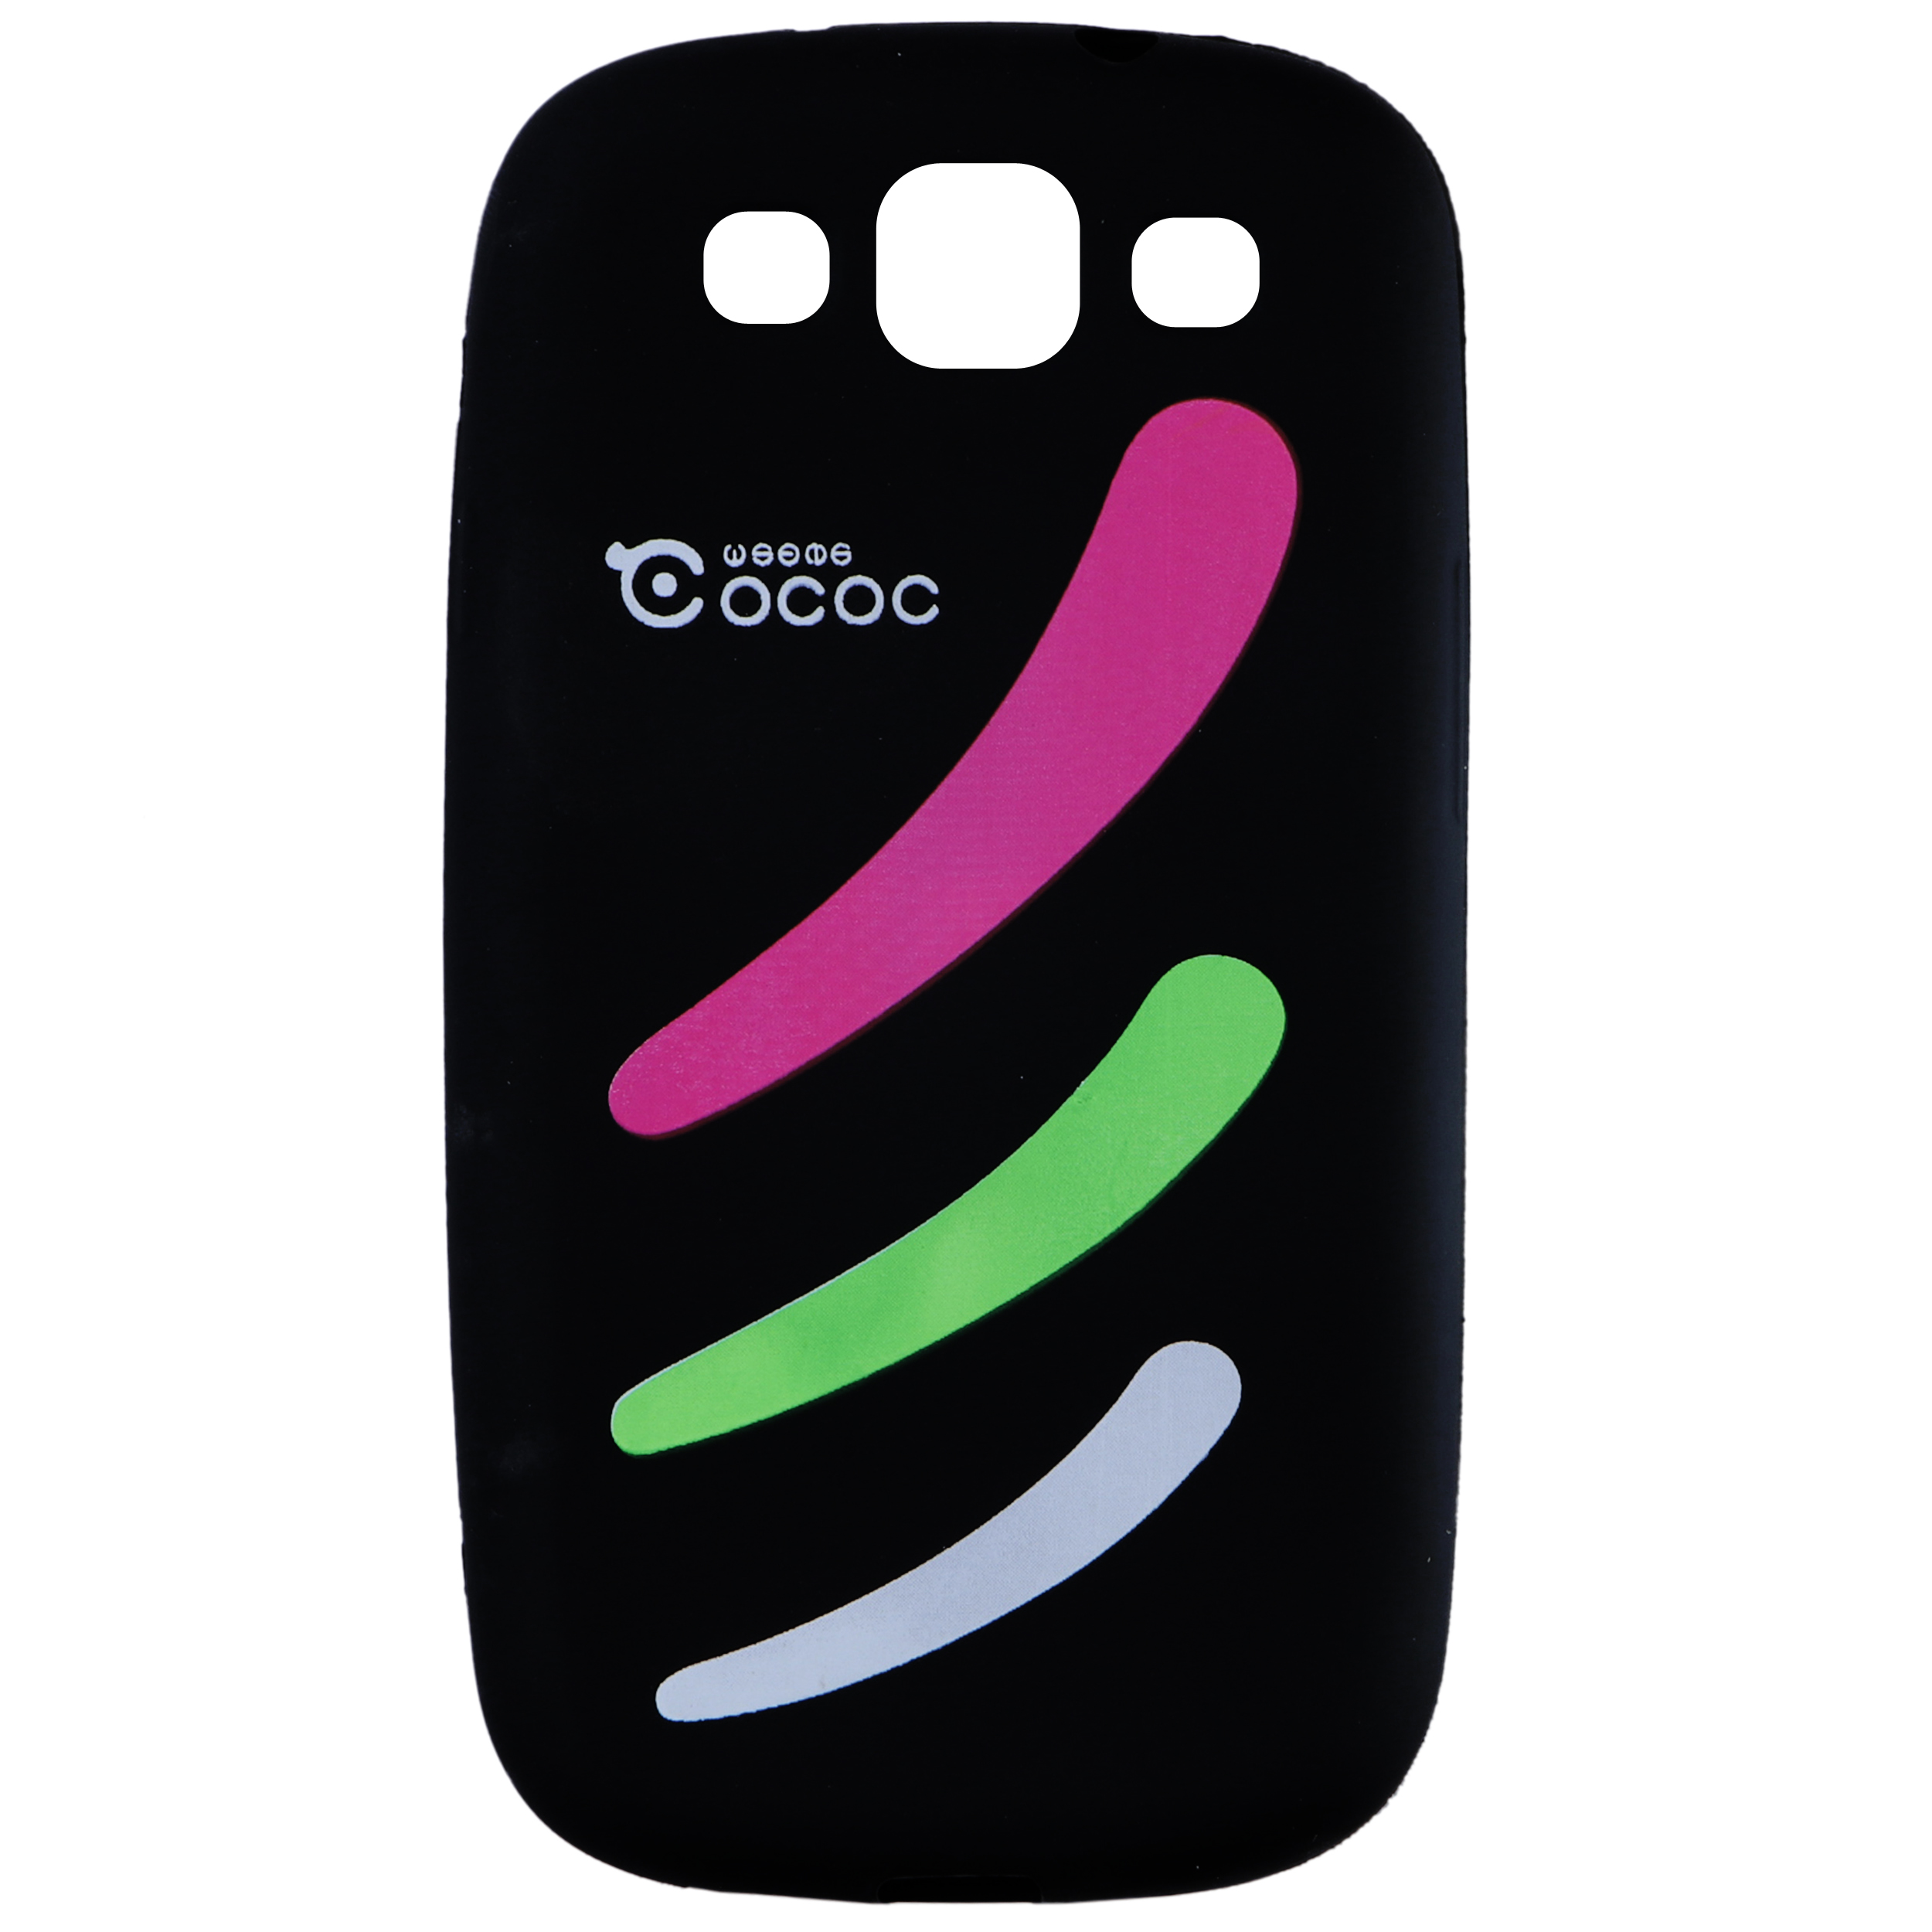 کاور کوکوک مدل f6 مناسب برای گوشی موبایل سامسونگ Galaxy S3